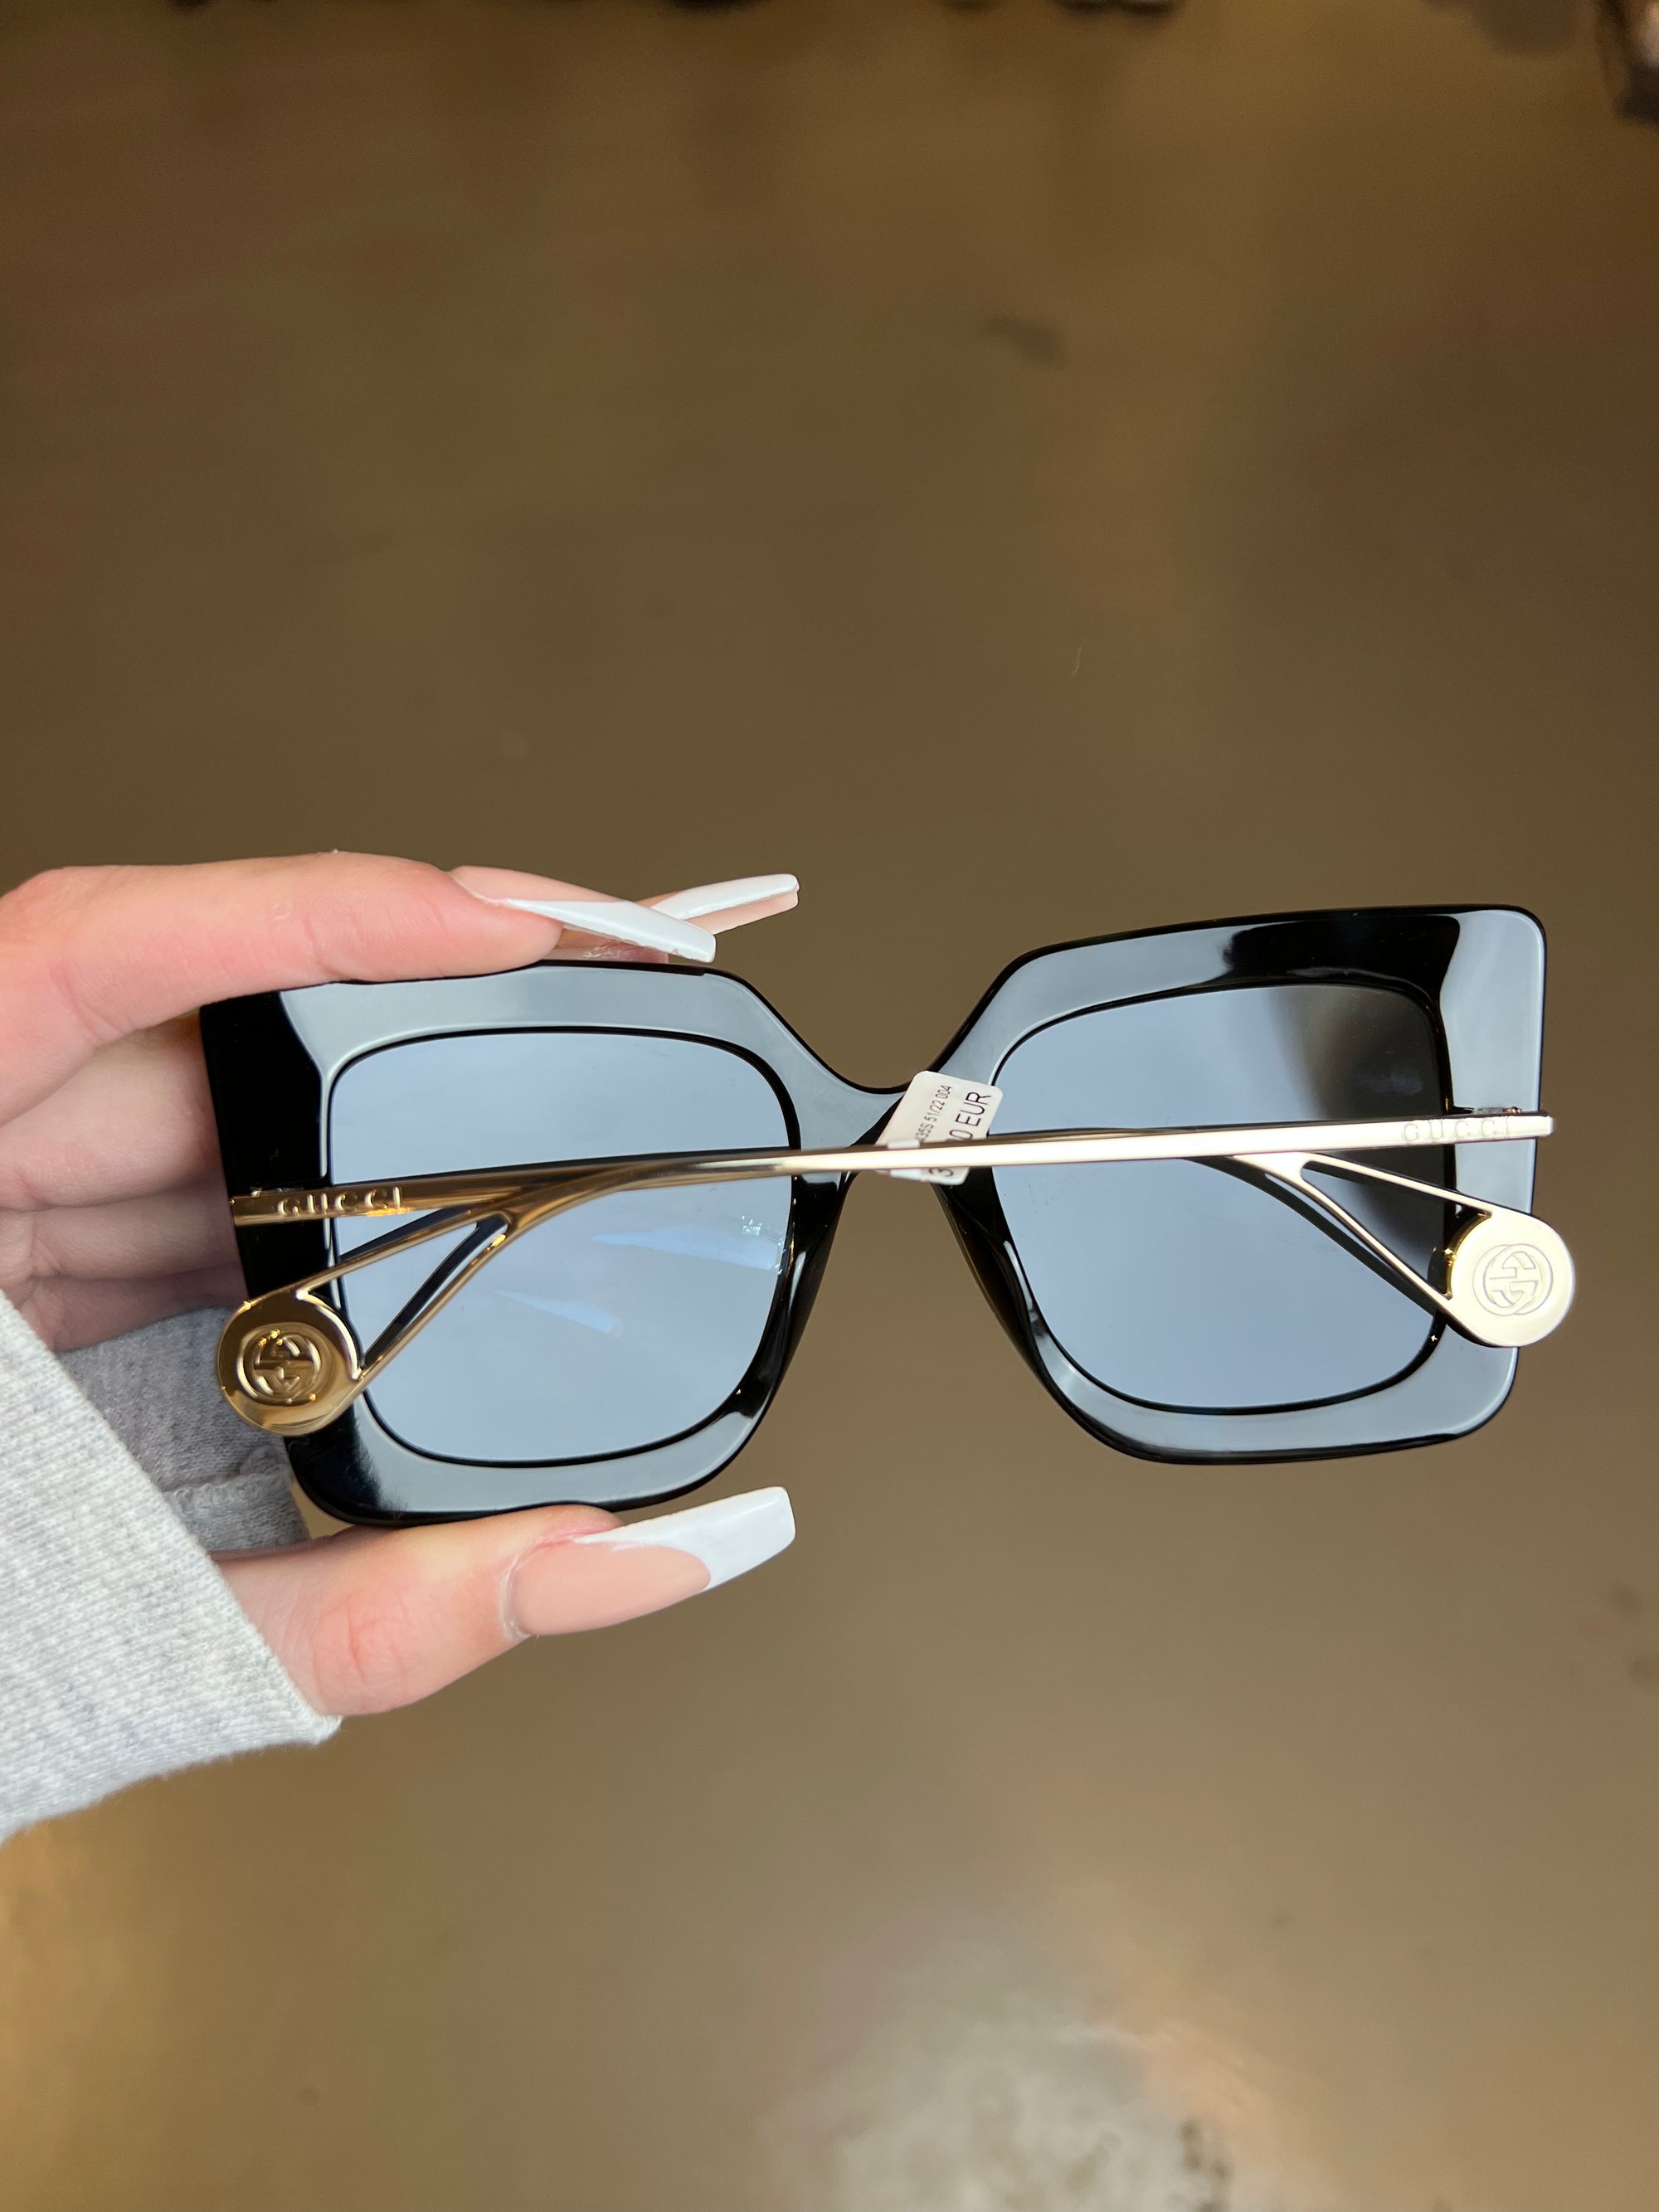 Produktbild der Gucci Sunglasses in Schwarz von hinten.